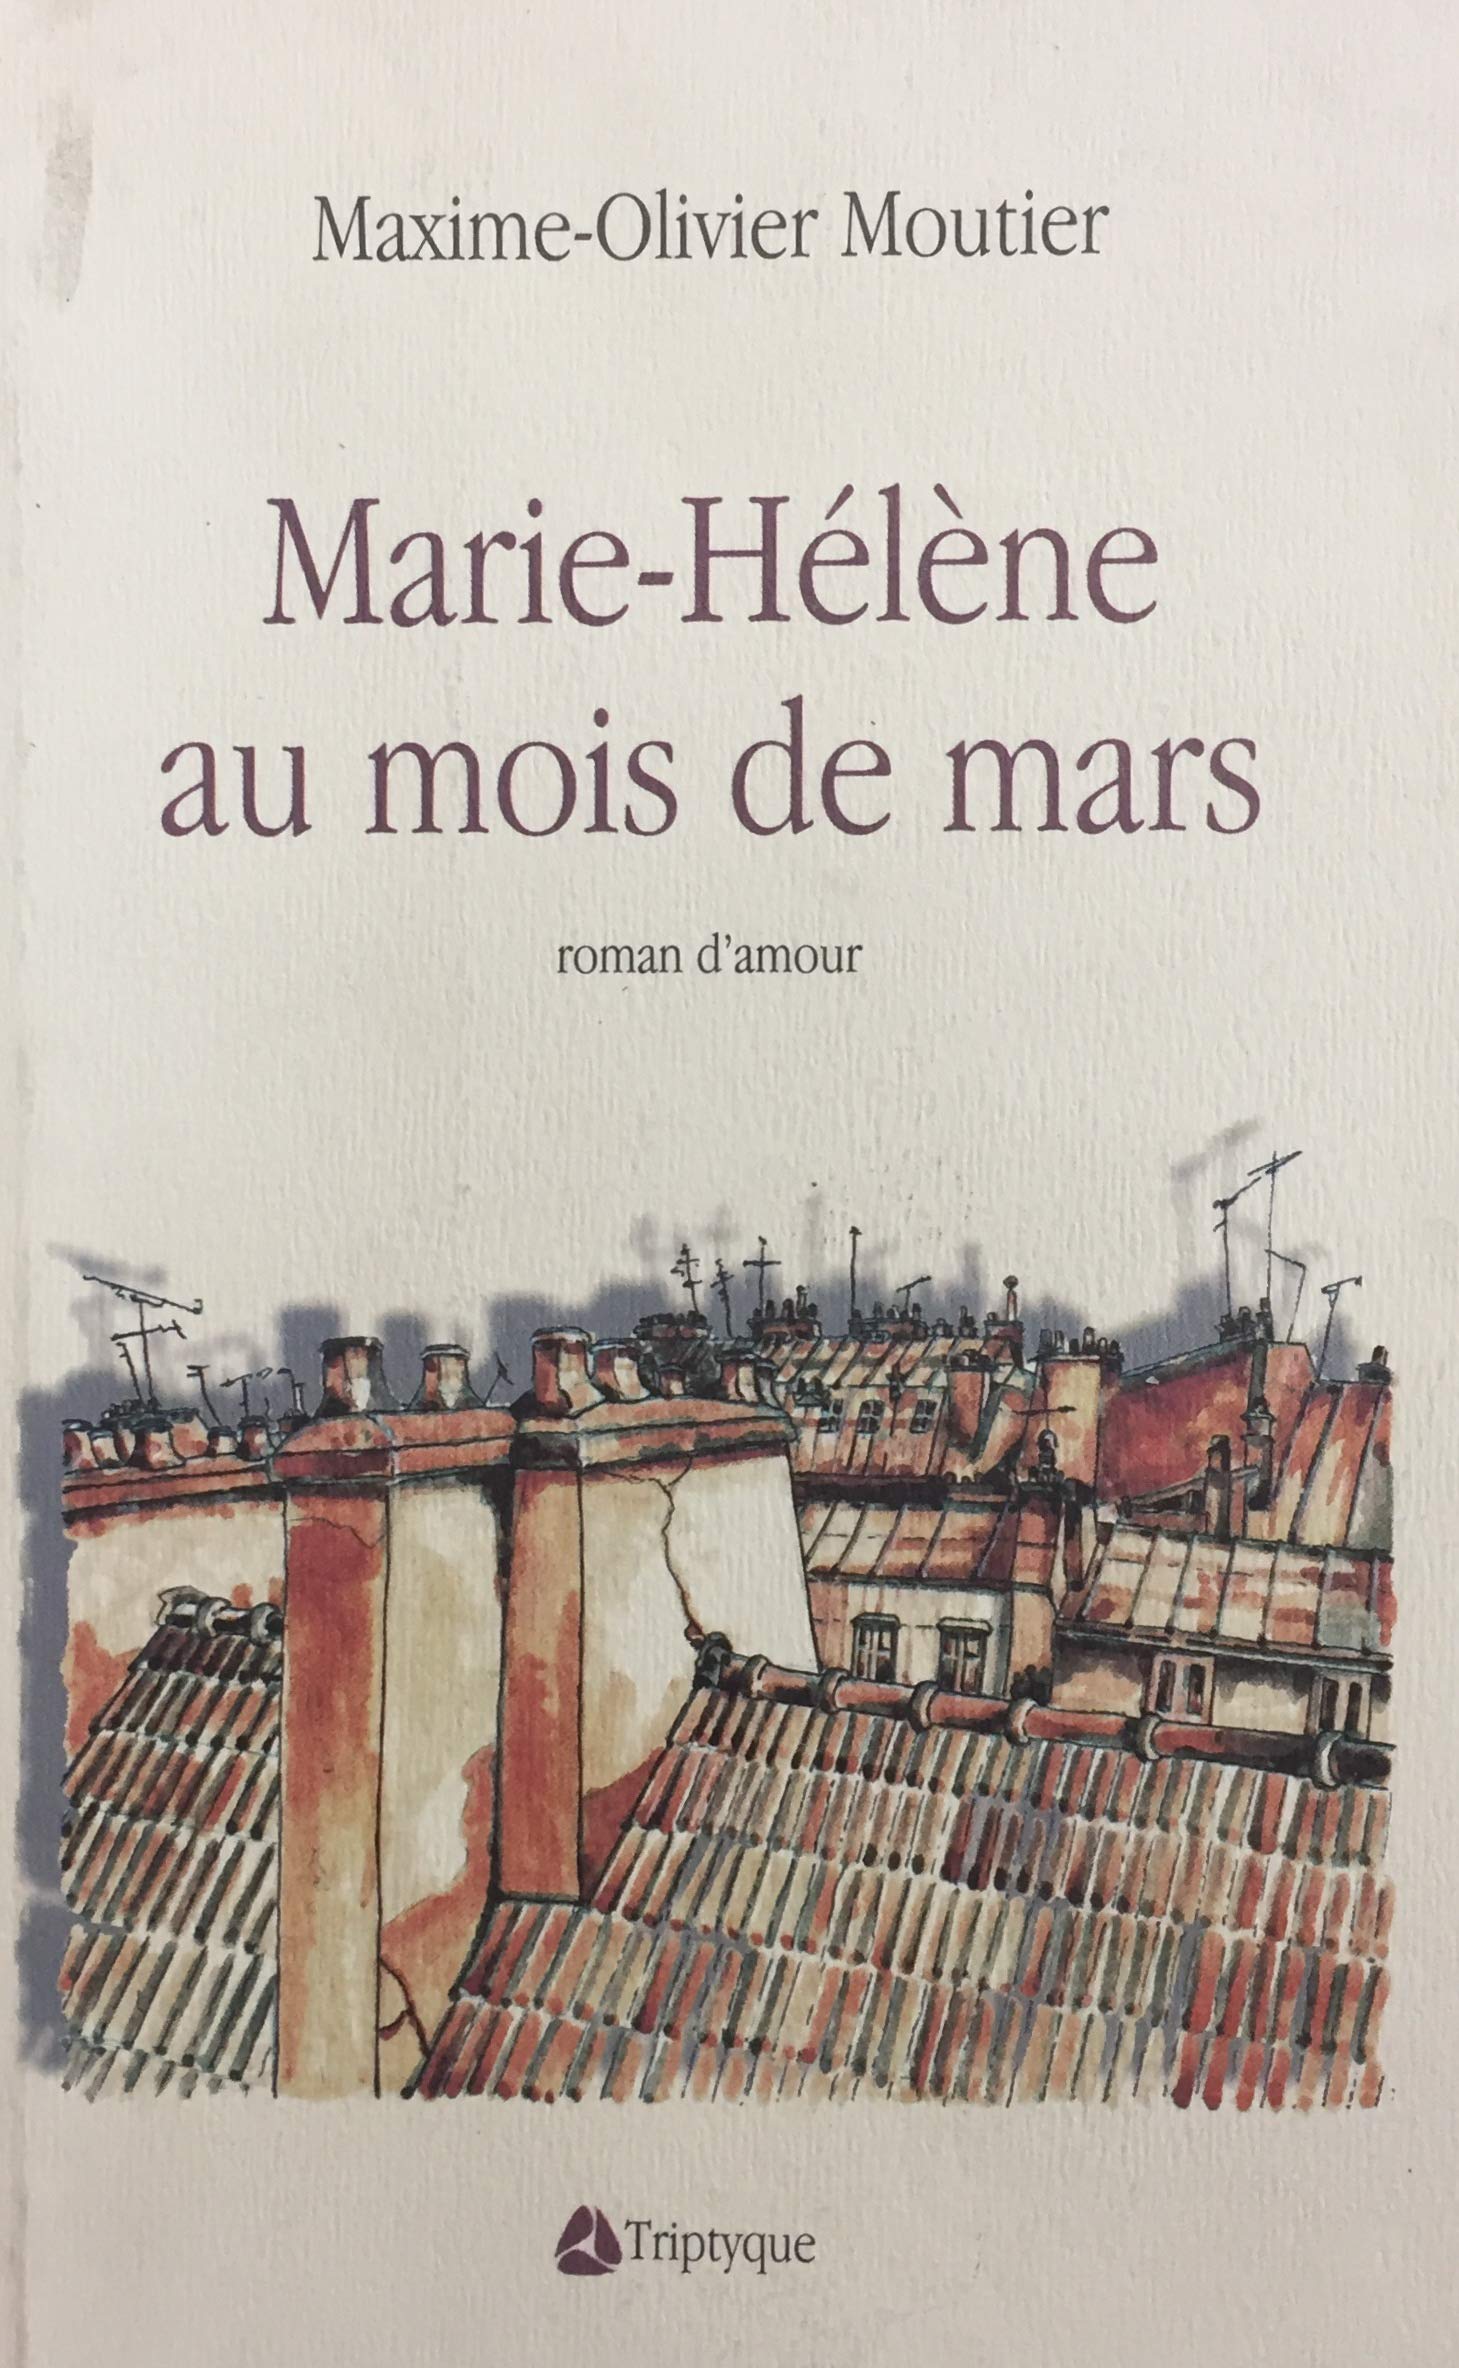 Livre ISBN 2890313093 Marie-Hélène au mois de mars (Maxime-Olivier Moutier)